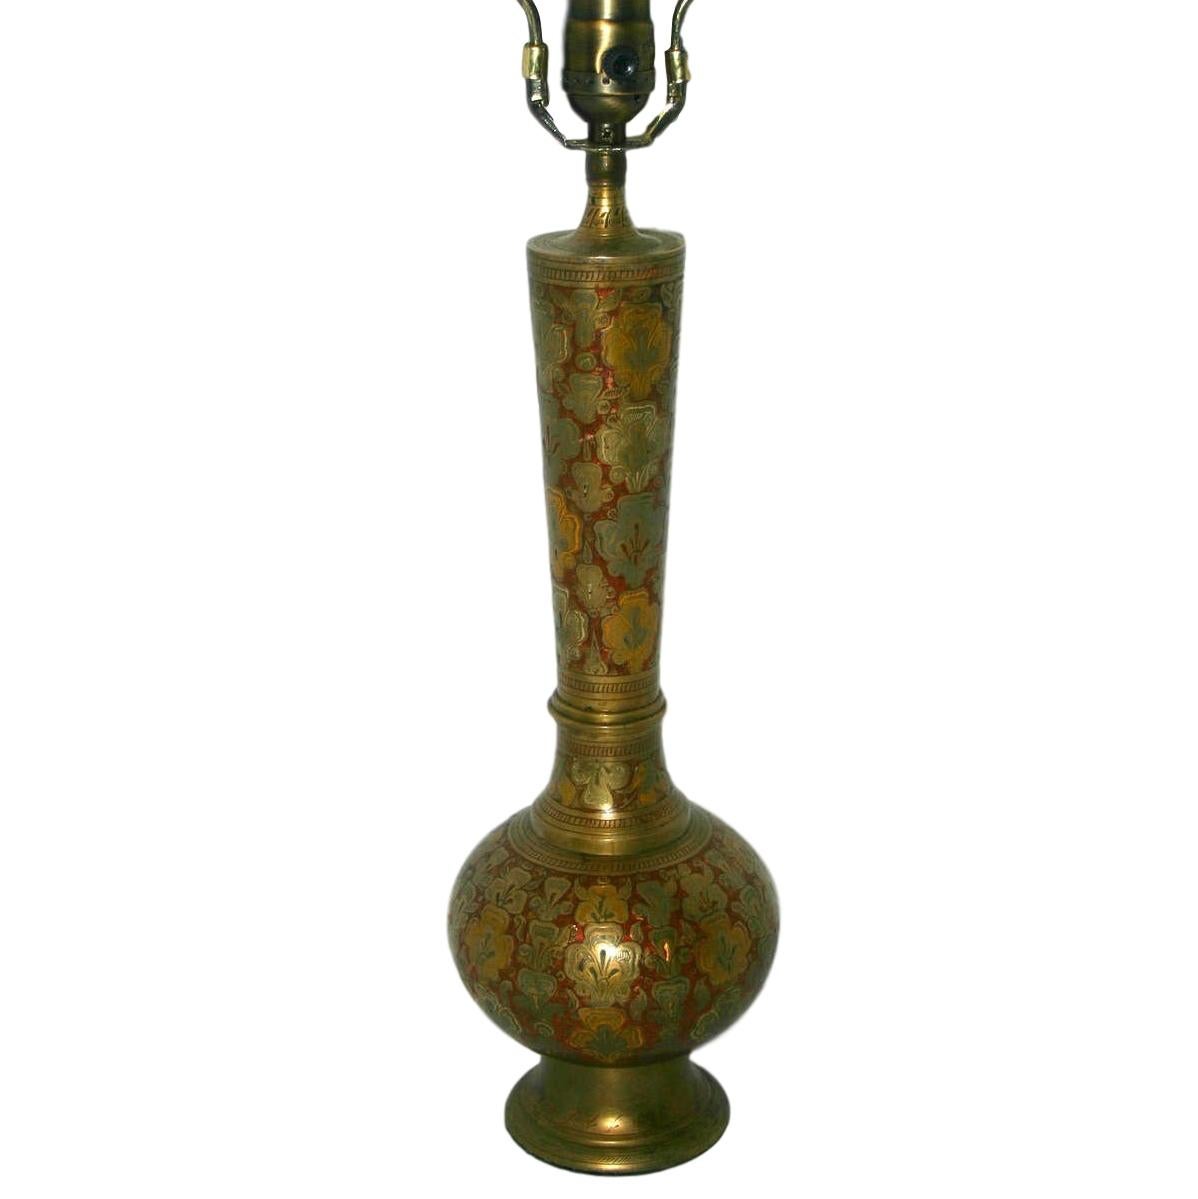 Lampe de table unique en laiton émaillé et martelé, datant des années 1930, avec motif floral et feuillage sur le corps.

Mesures :
Hauteur du corps : 15,5